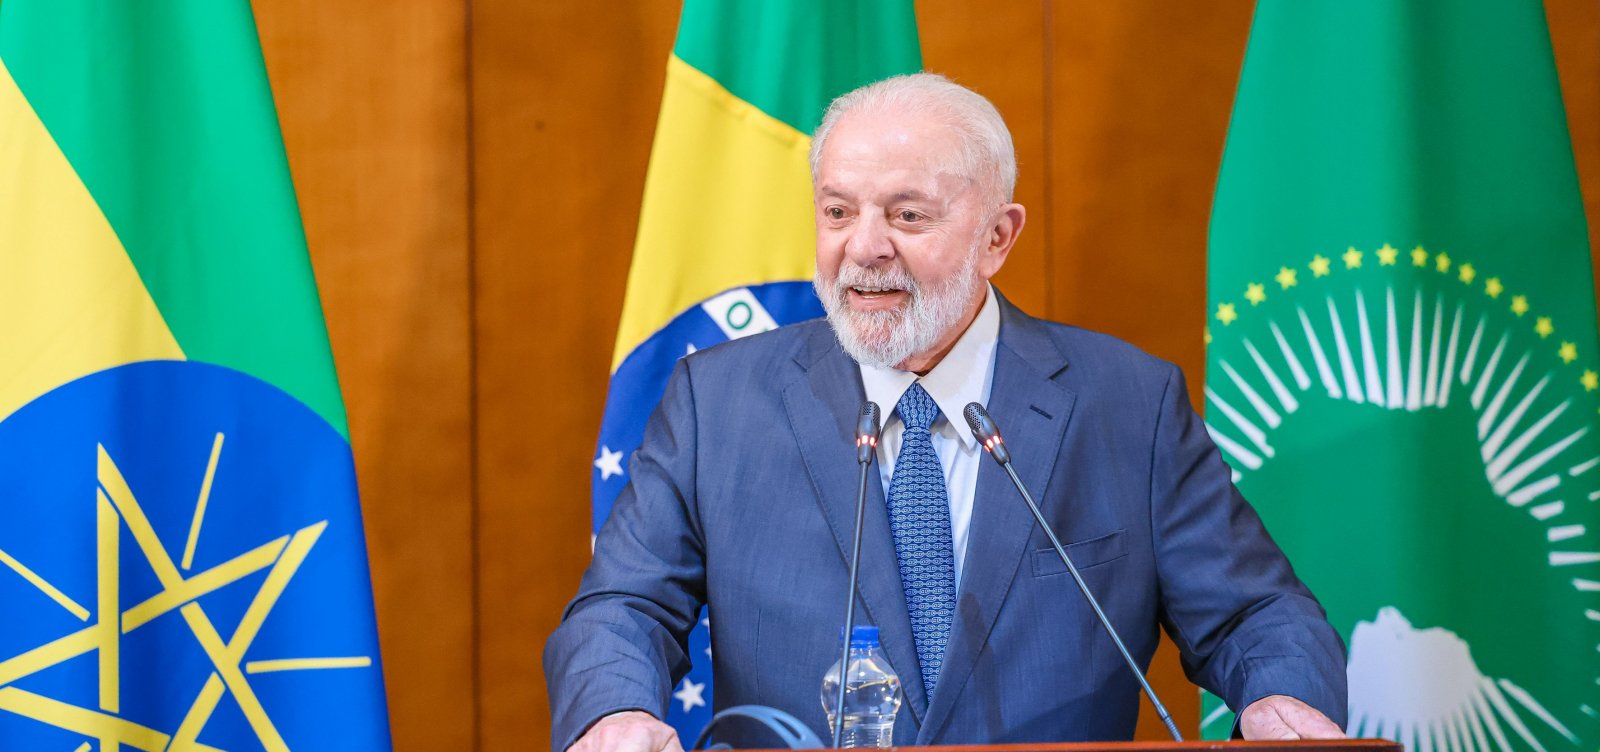 Com 113 assinaturas, pedido de impeachment de Lula não deve ser aprovado pela Câmara 